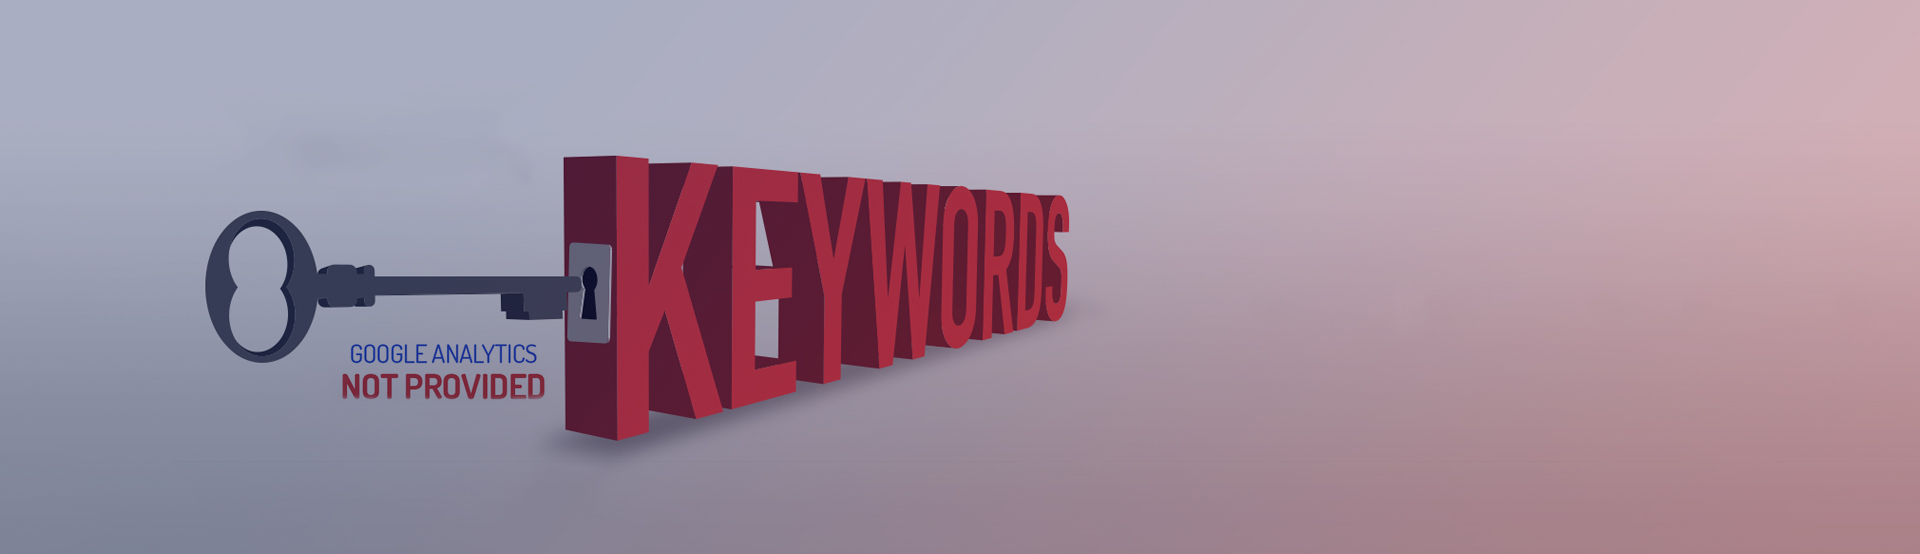 5-Proven-Ways-To-Unlock-Not-Provided-Keywords